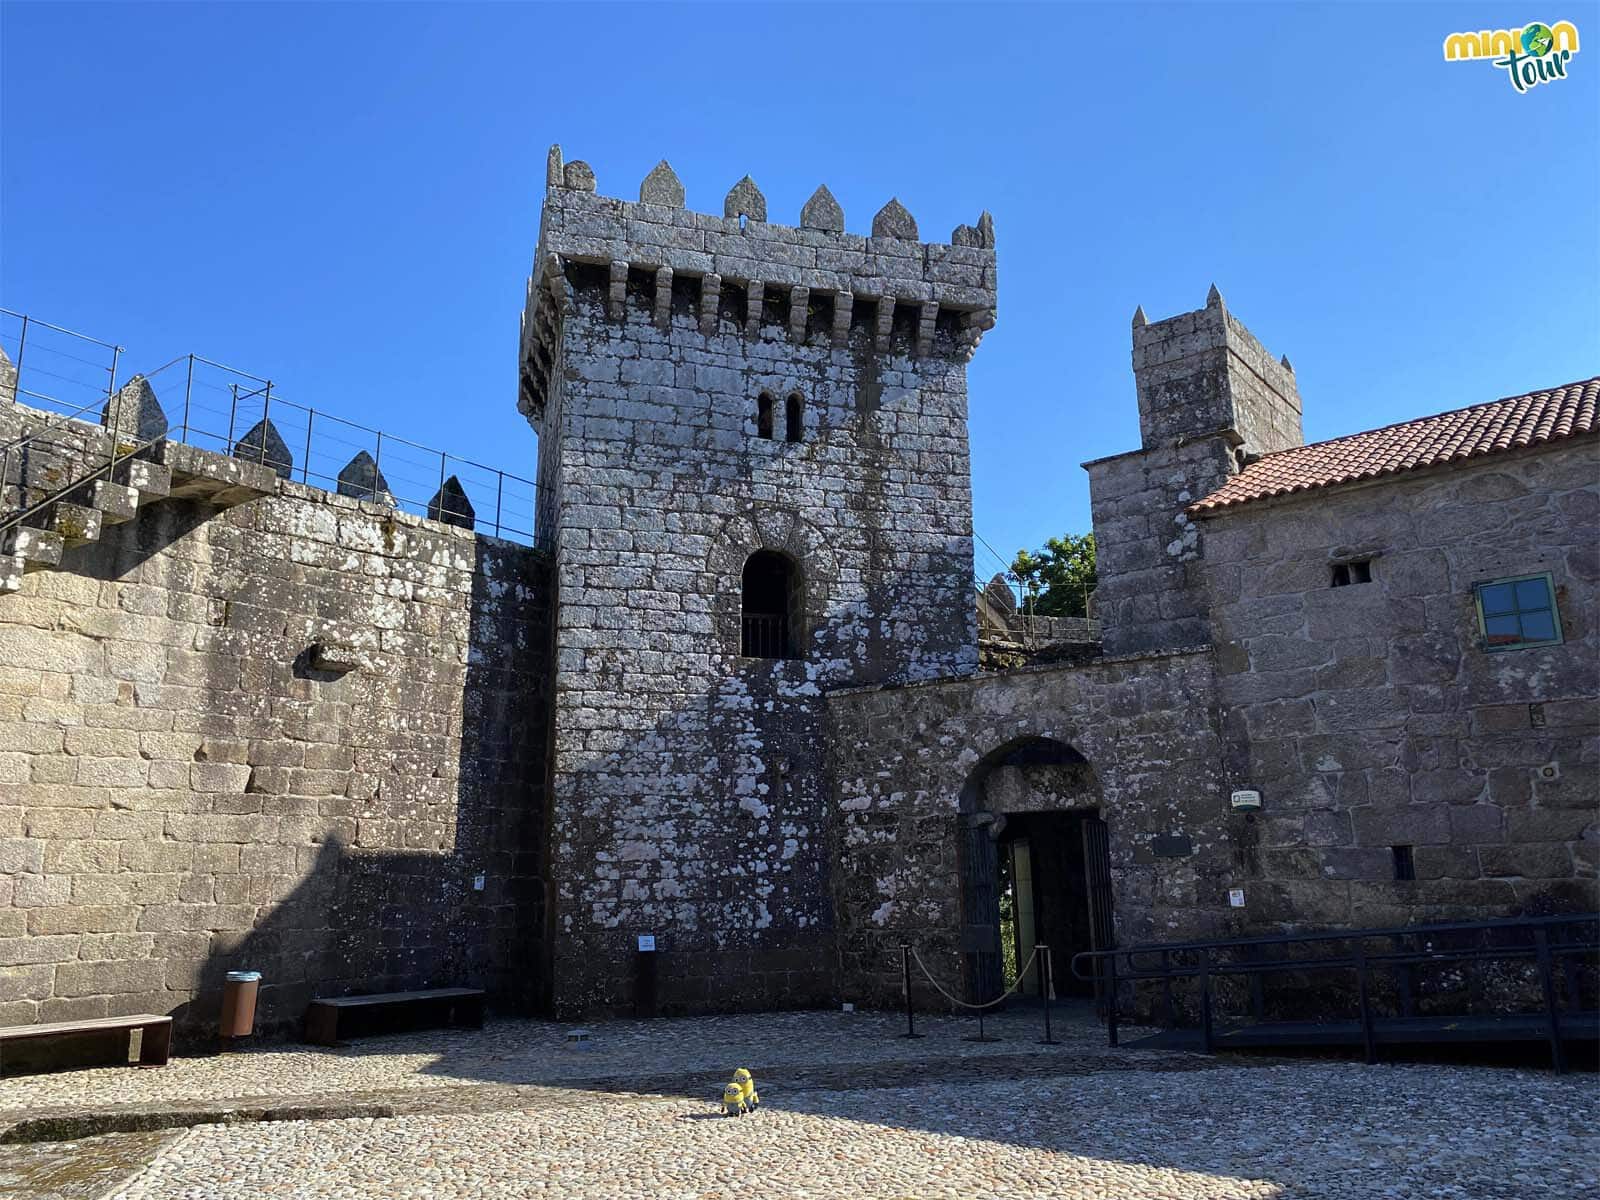 Nos vamos de visita al Castillo de Vimianzo